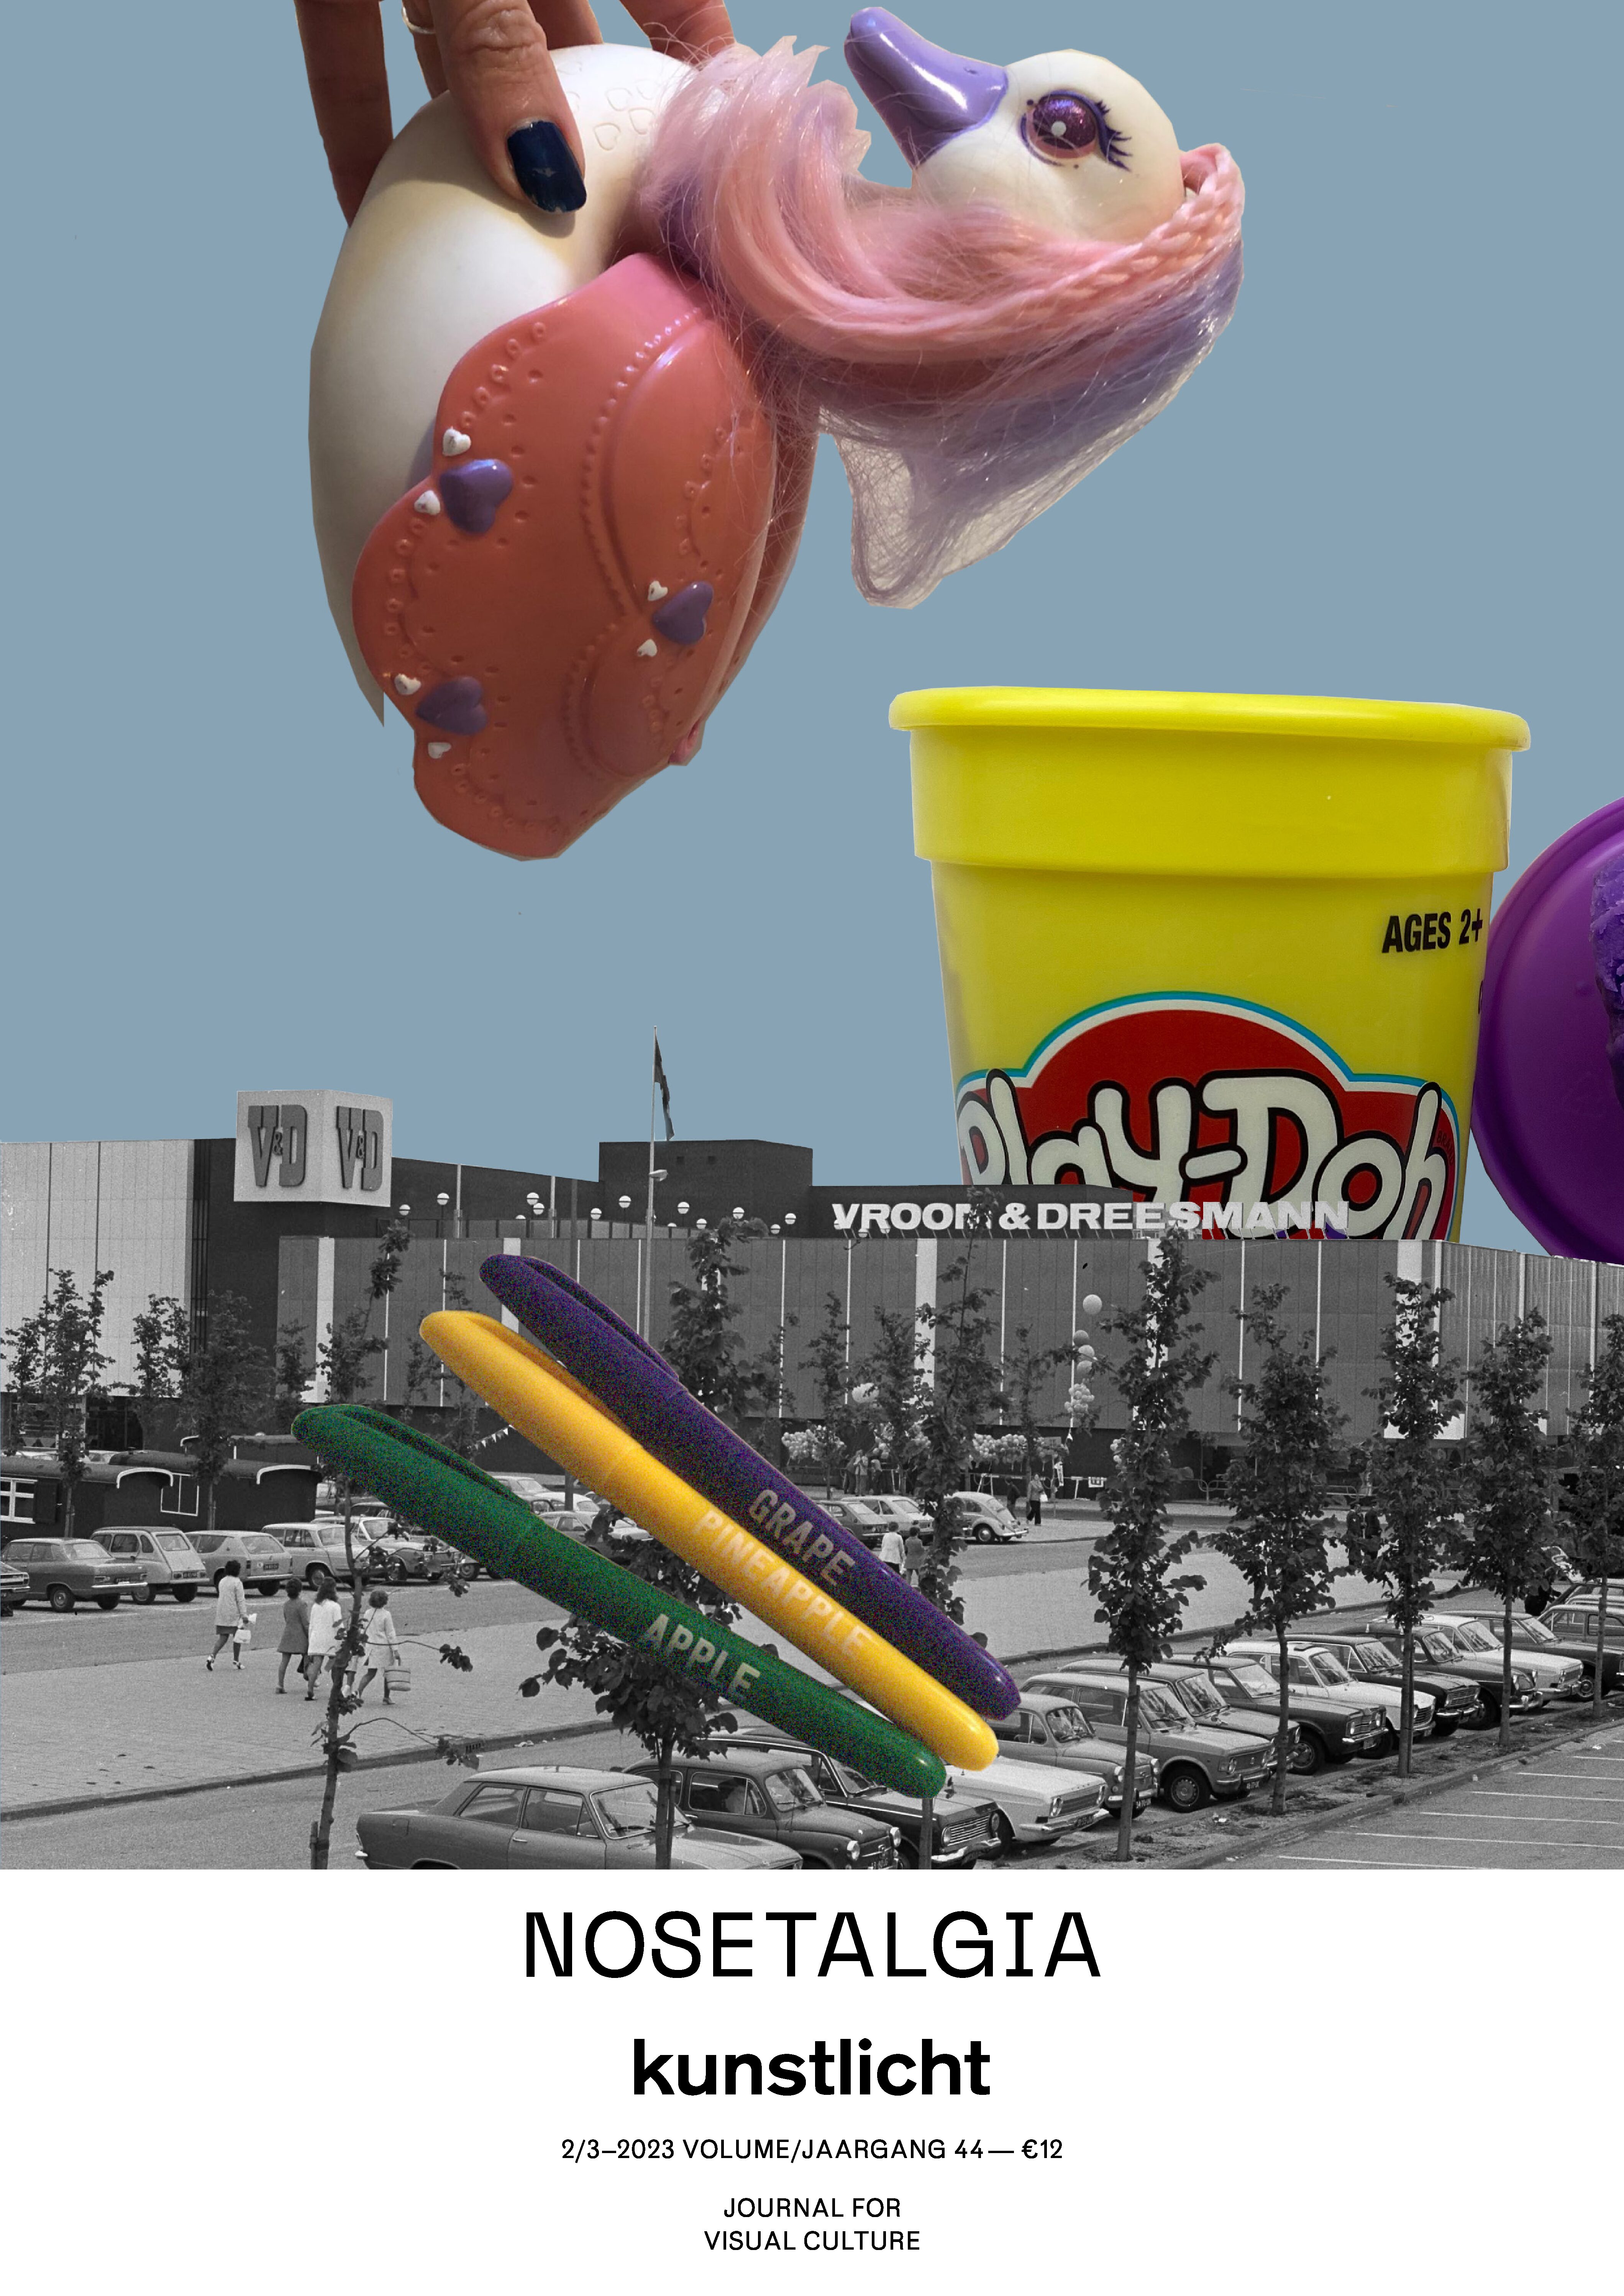 Nosetalgia online event for World Taste & Smell Day